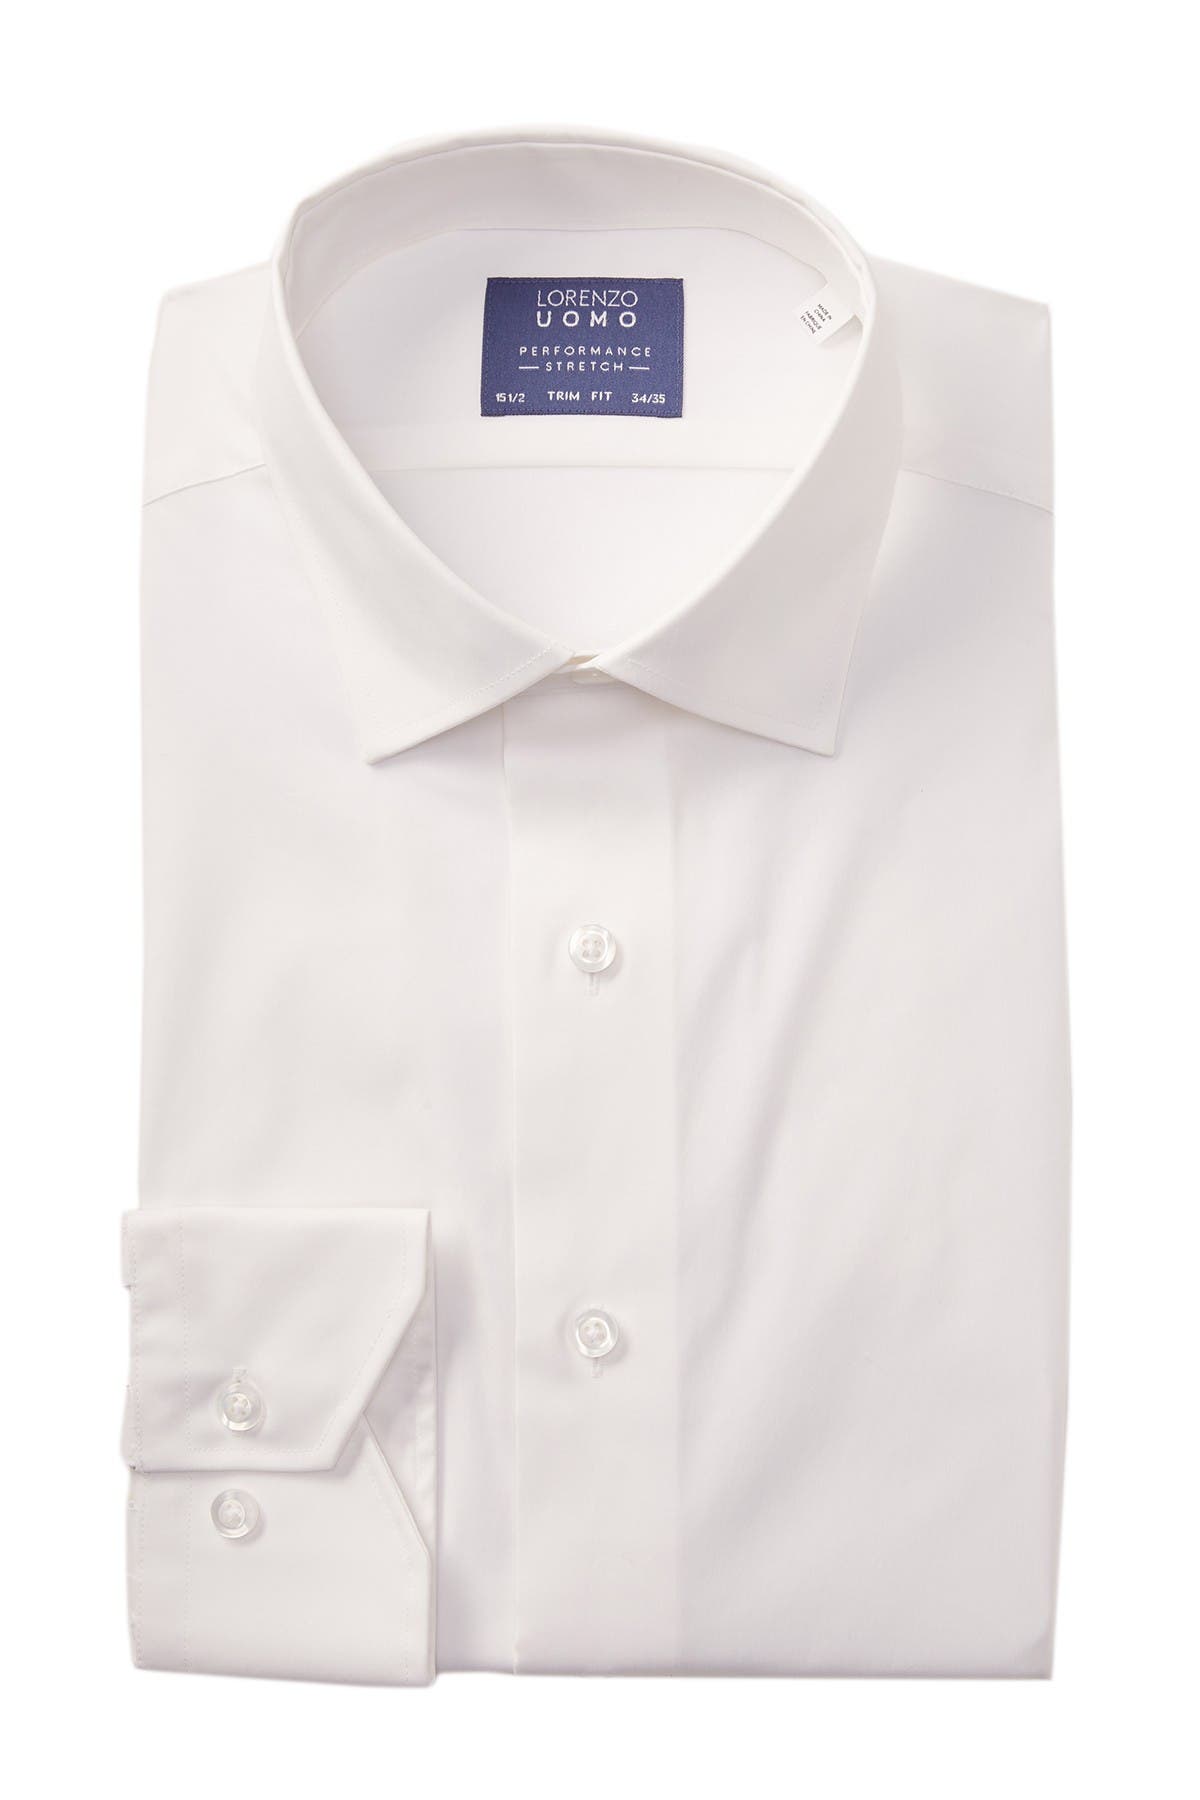 Дорожная классическая рубашка из хлопка с эластичной отделкой Lorenzo Uomo